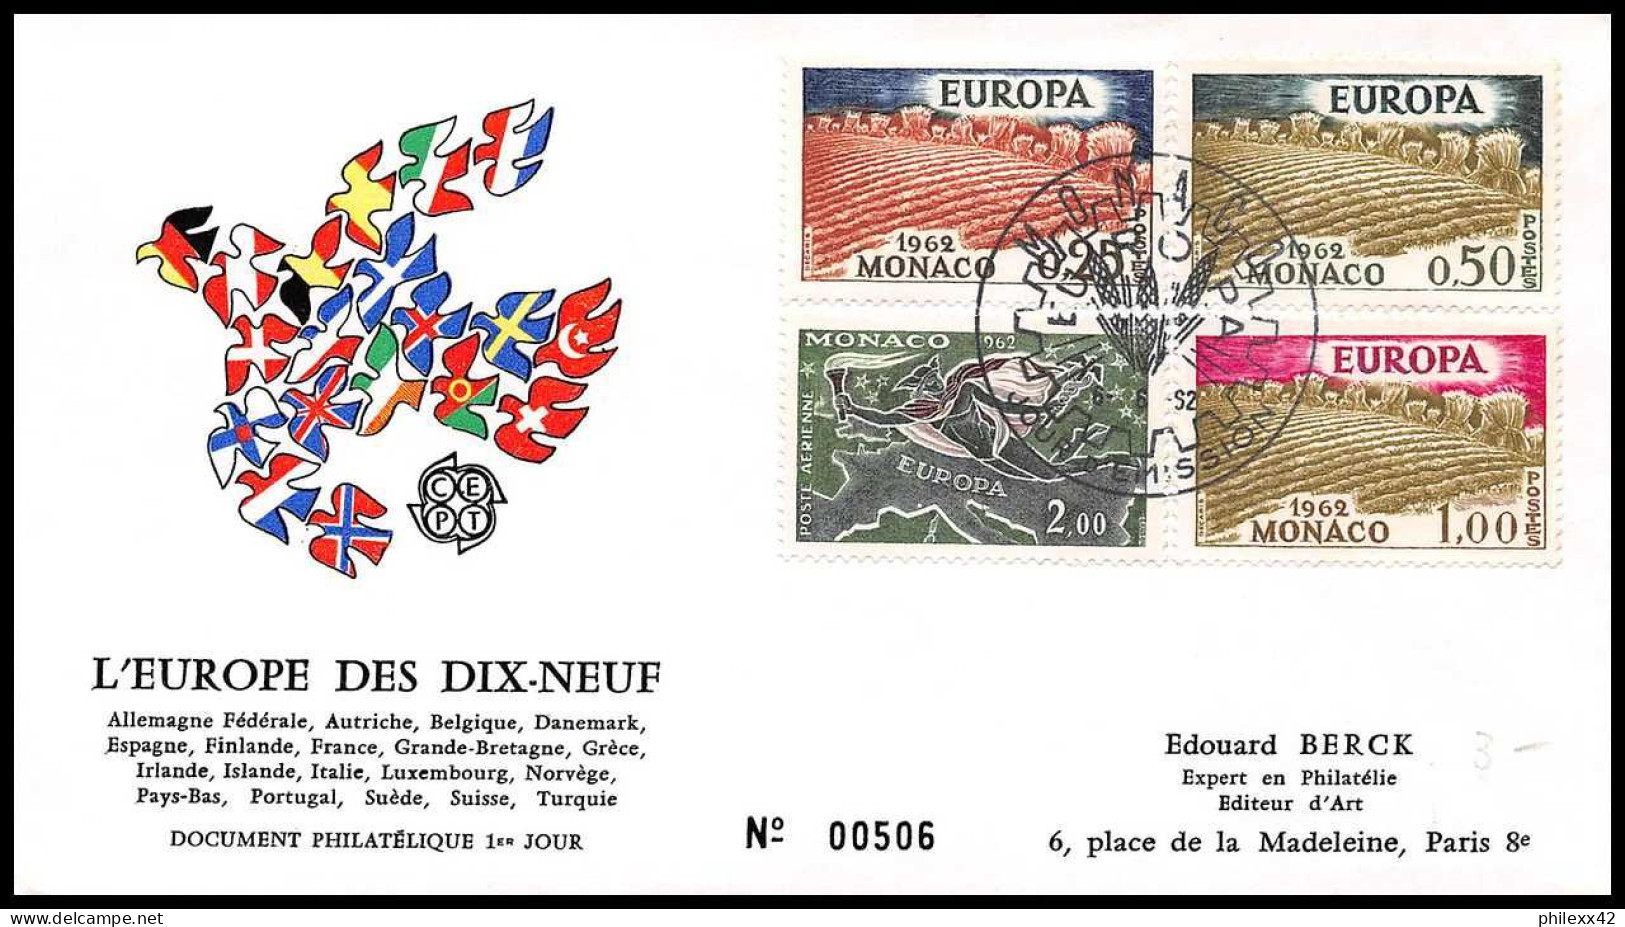 12903 Lot De 10 Fdc Premier Jour Europa 1965/1973 Fdc Premier Jour Monaco Lettre Cover - Lots & Serien